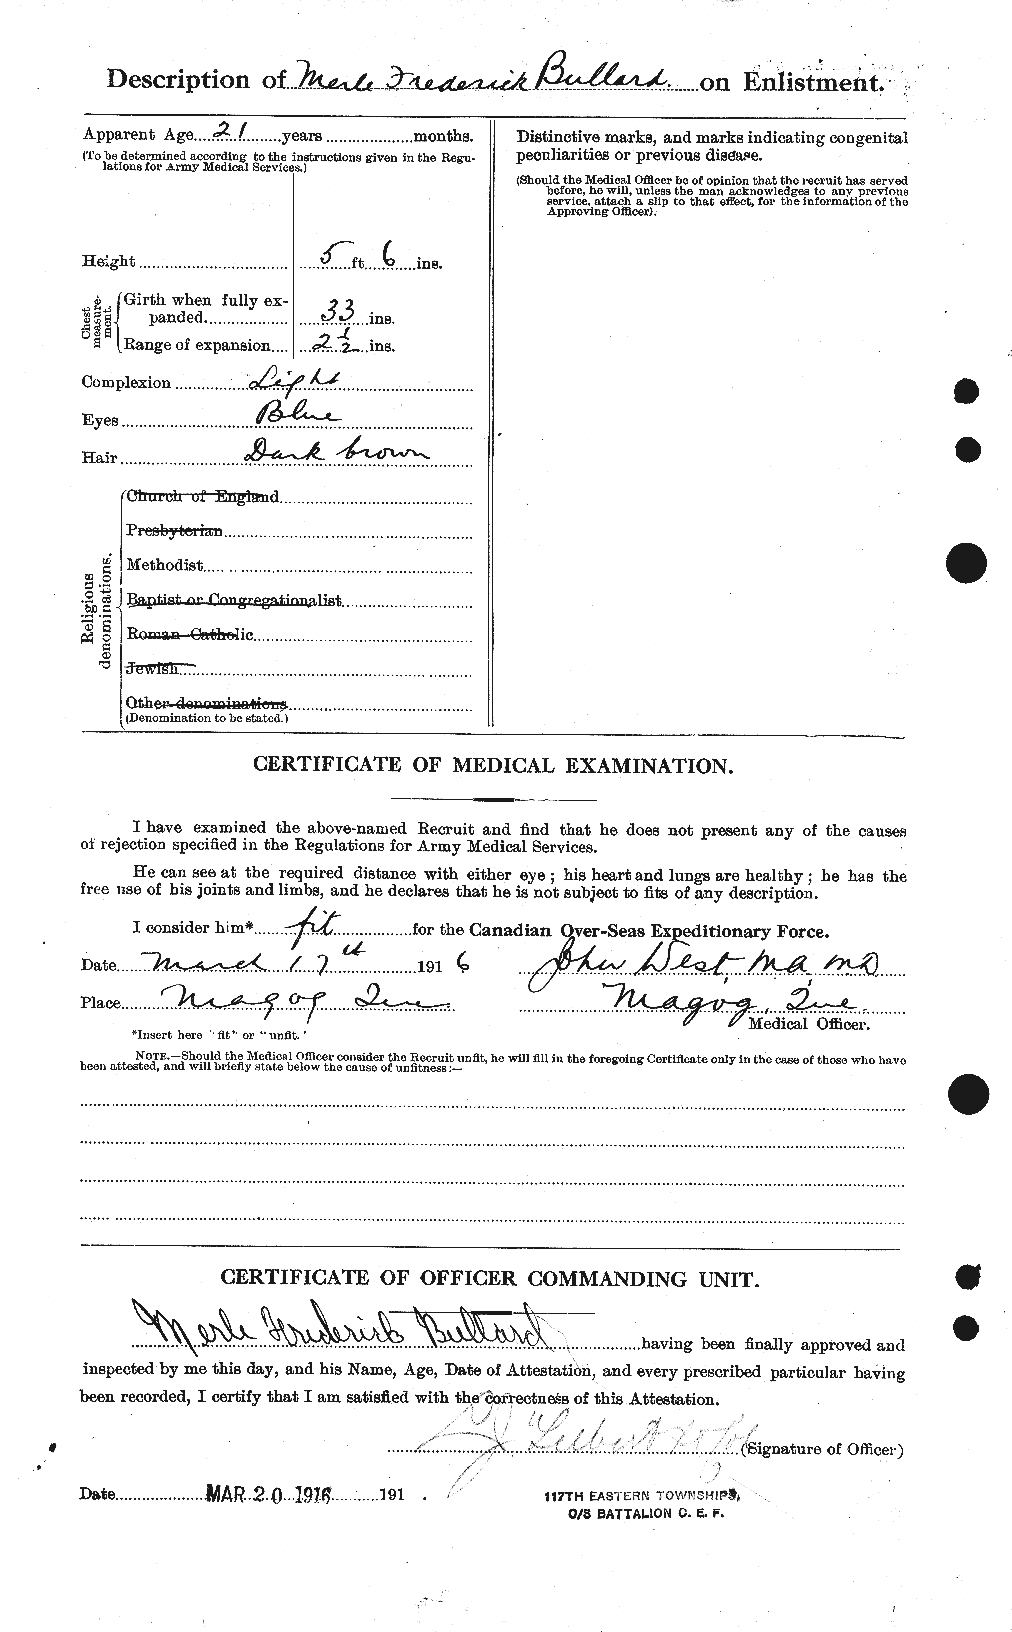 Dossiers du Personnel de la Première Guerre mondiale - CEC 273471b